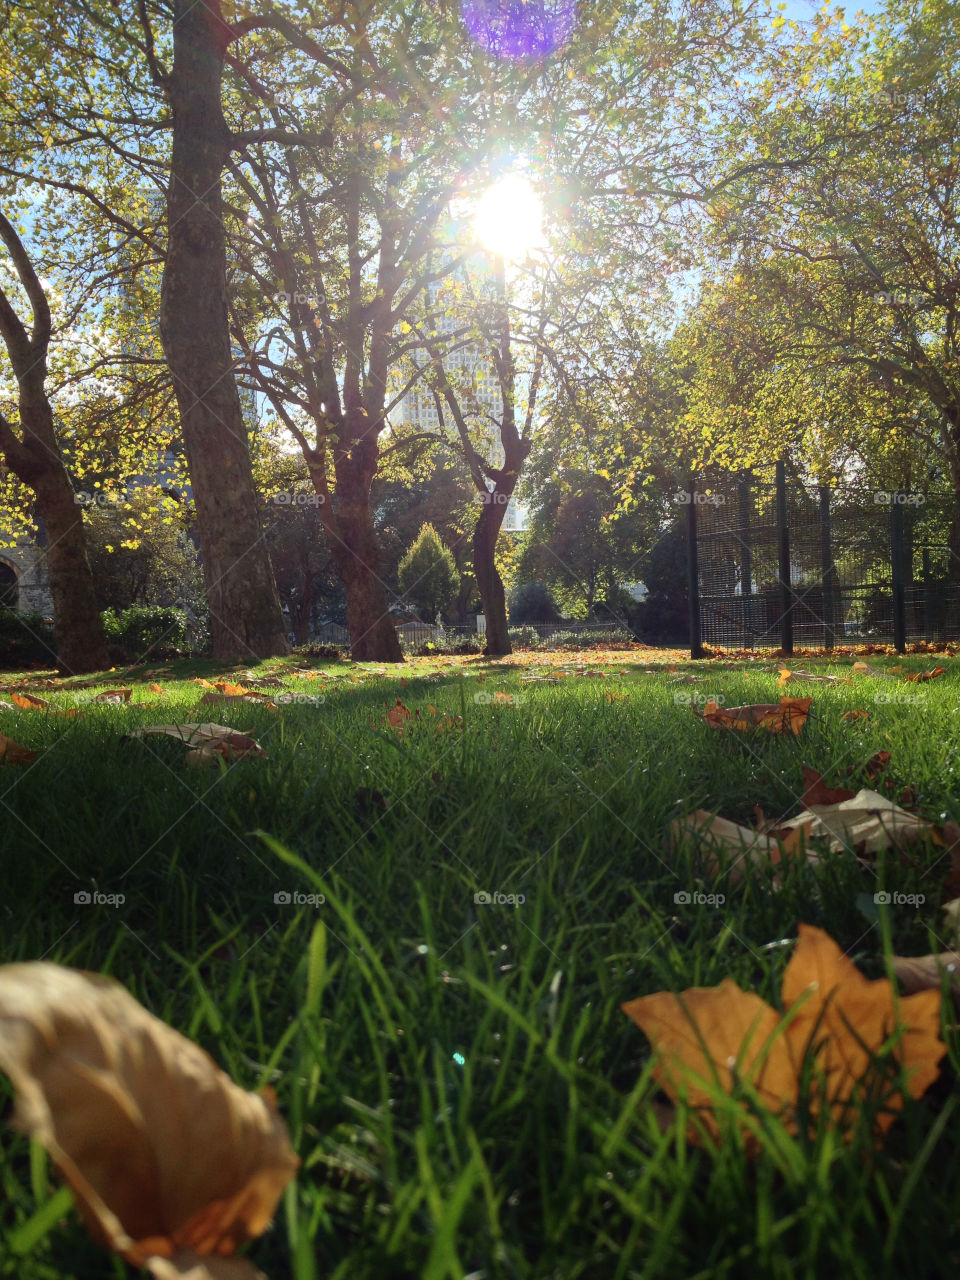 london park autumn mission5 by alexchappel